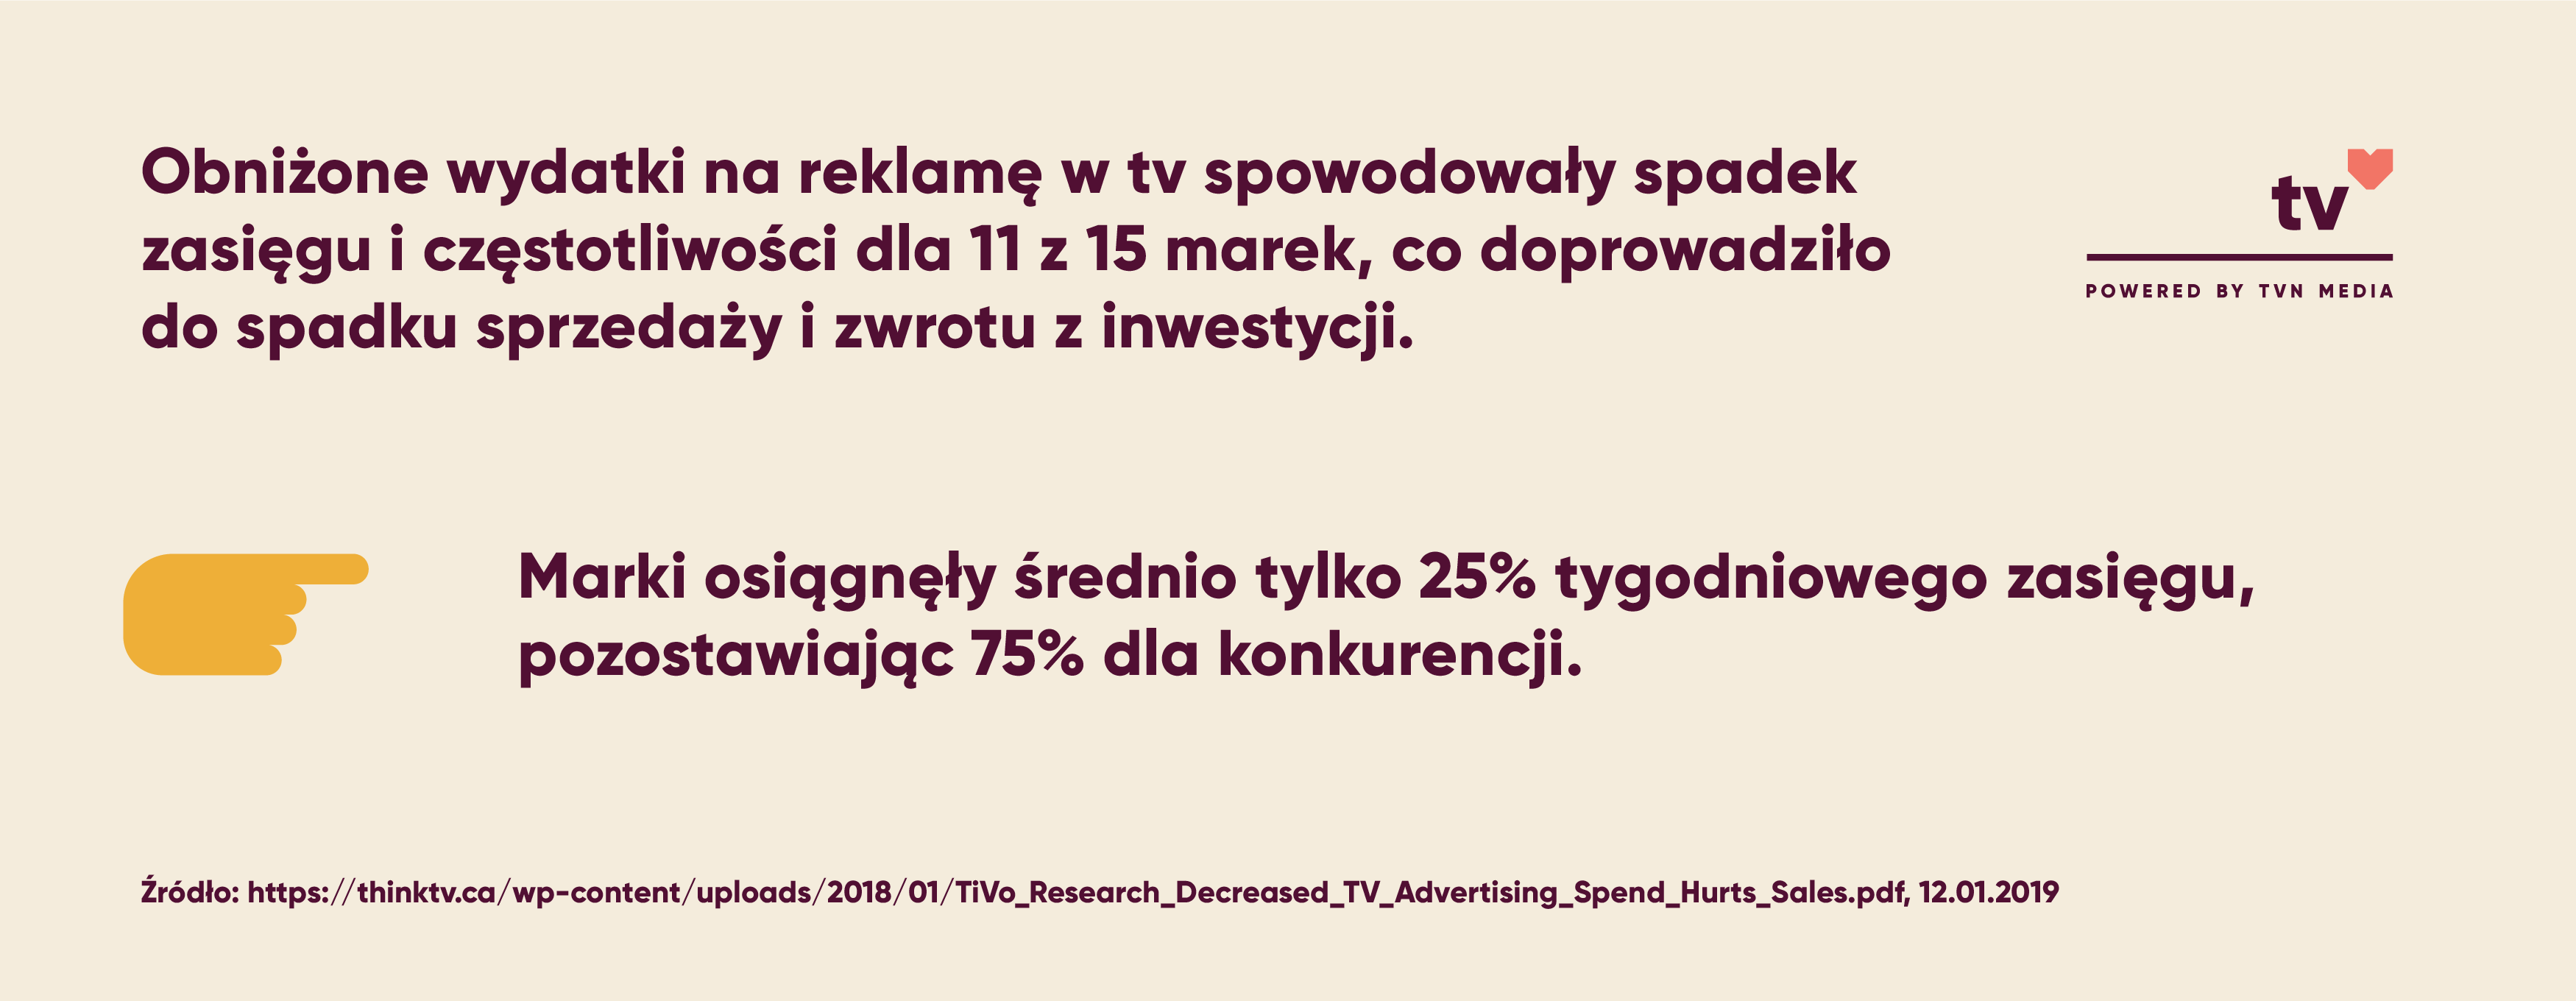 Obniżone wydatki na reklamę w tv spowodowały spadek zasięgu i częstotliwości dla 11 z 15 marek, co doprowadziło do spadku sprzedaży i zwrotu z inwestycji